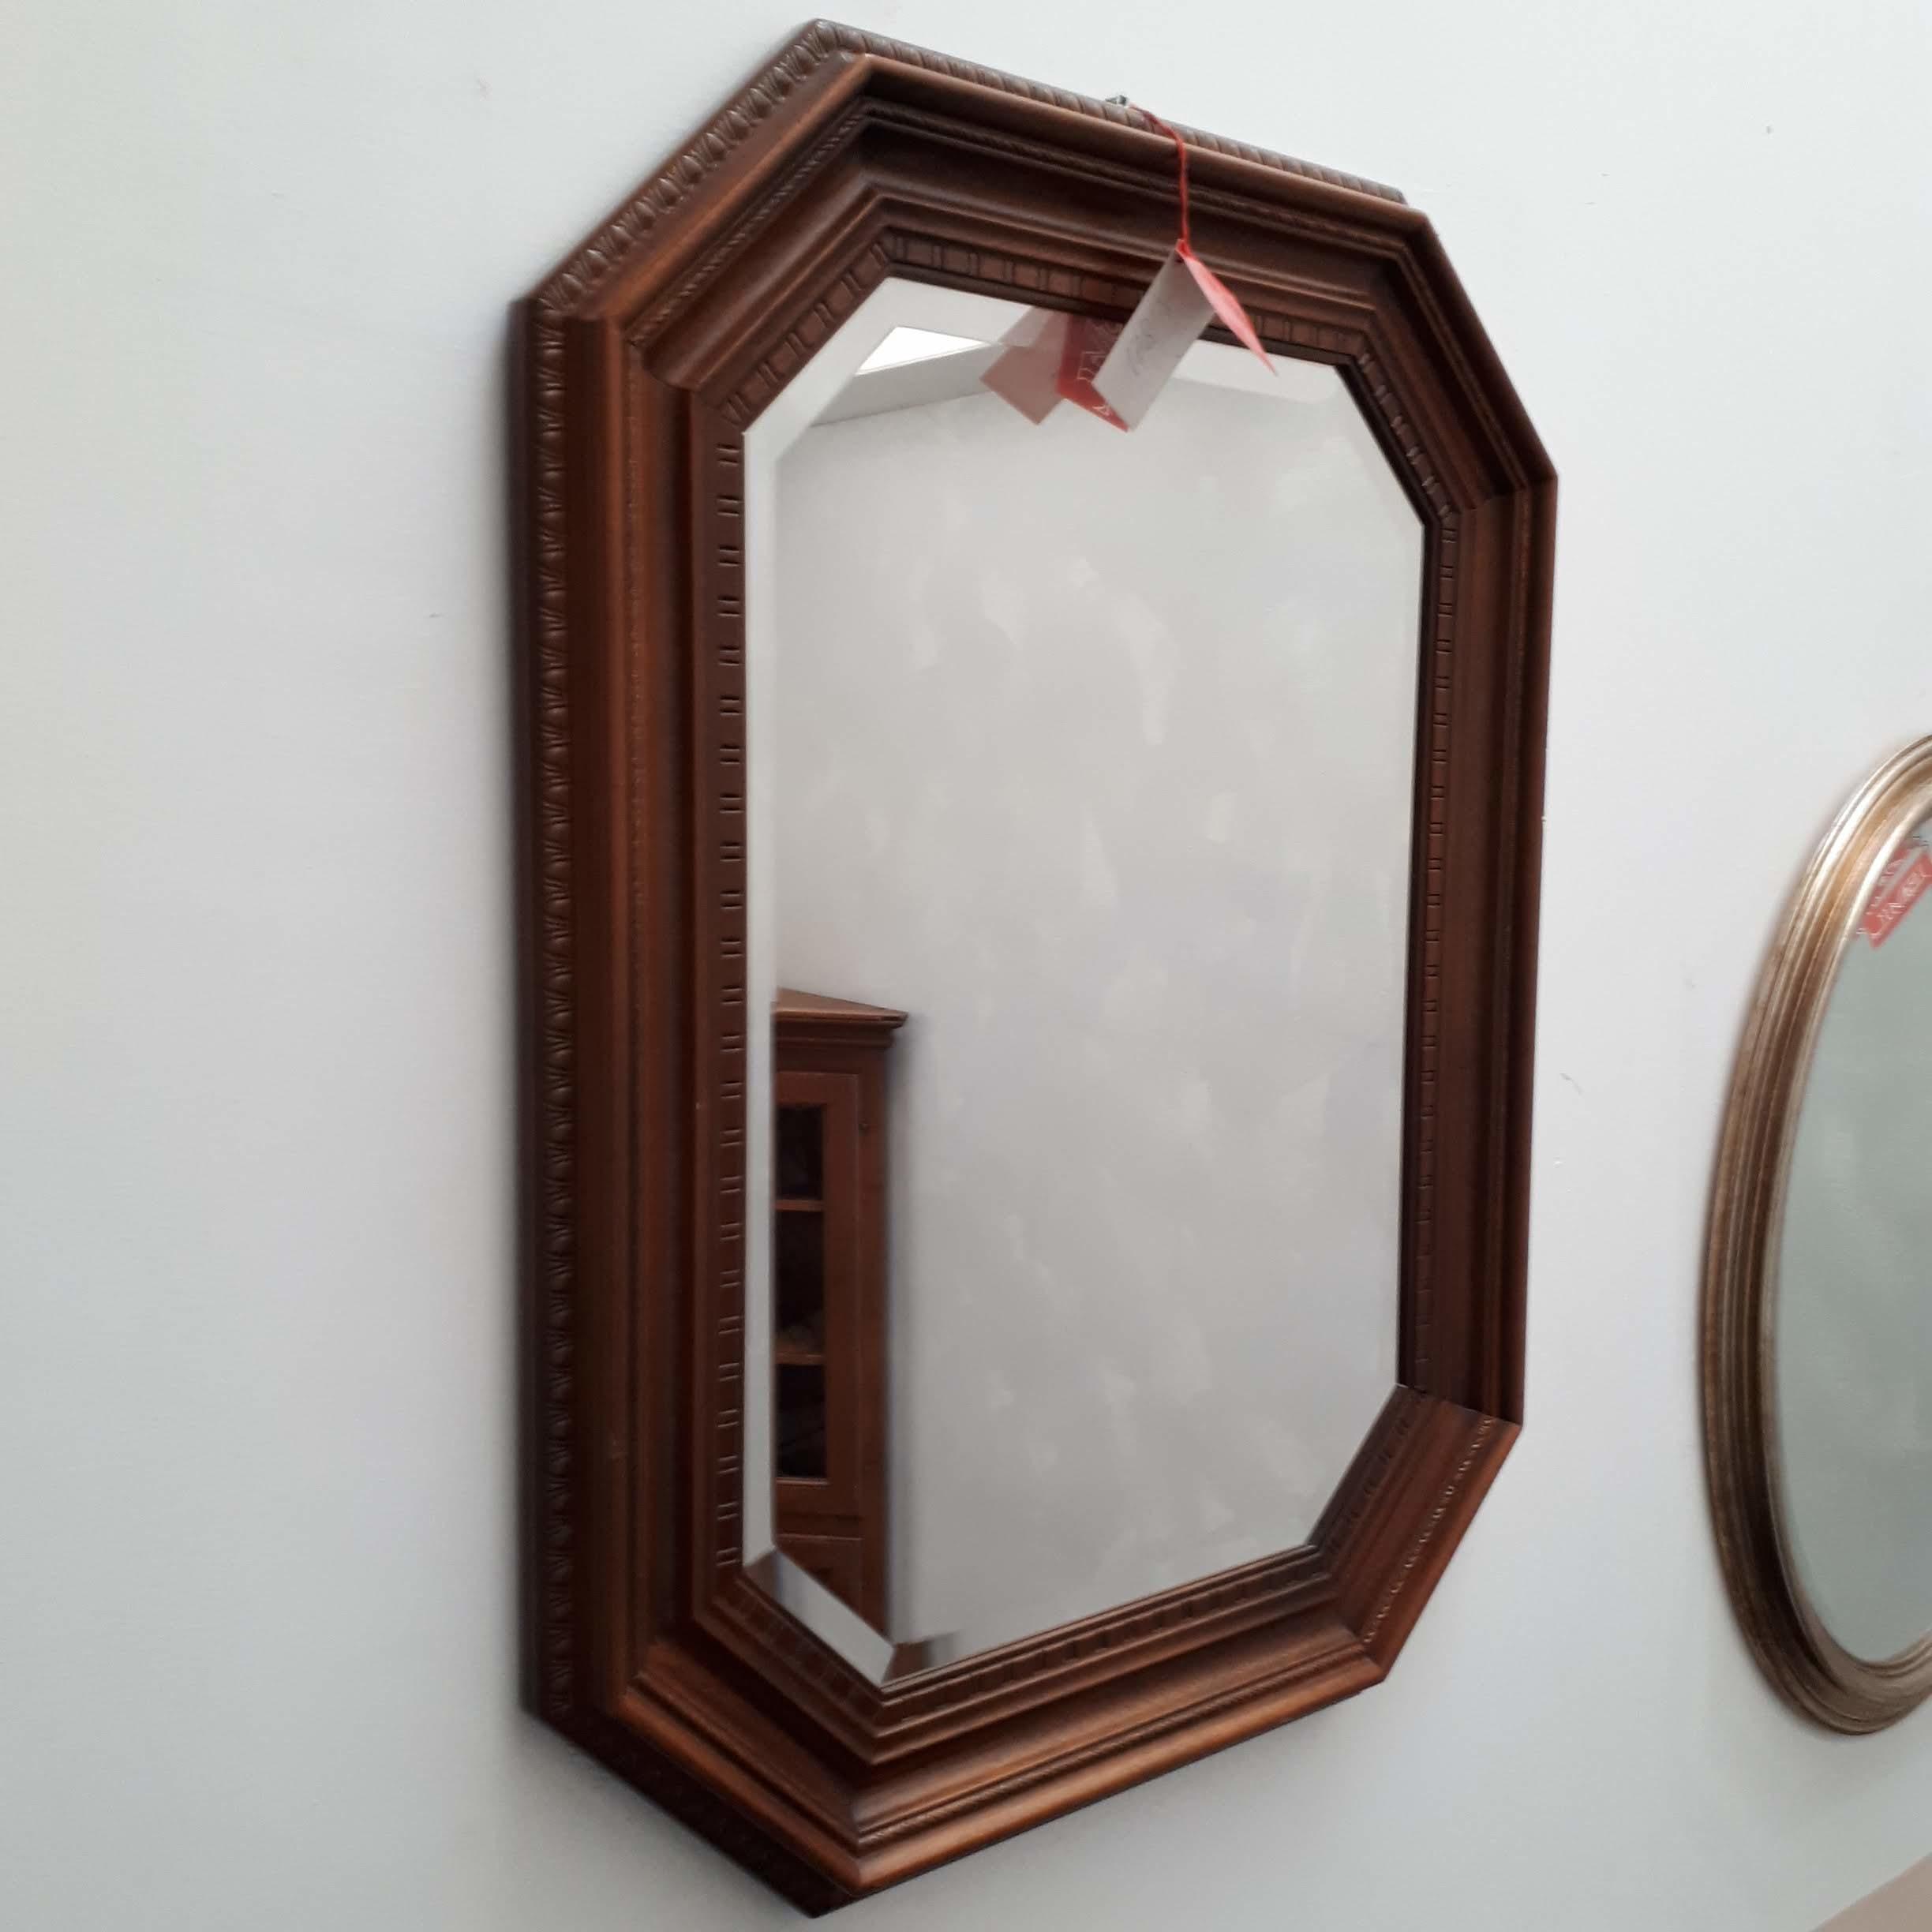 Specchio con cornice in legno di noce (art. 178) in promozione - Outlet  mobili e arredamento a Vicenza: cucine, camere, armadi, divani, bagno,  letti scontati